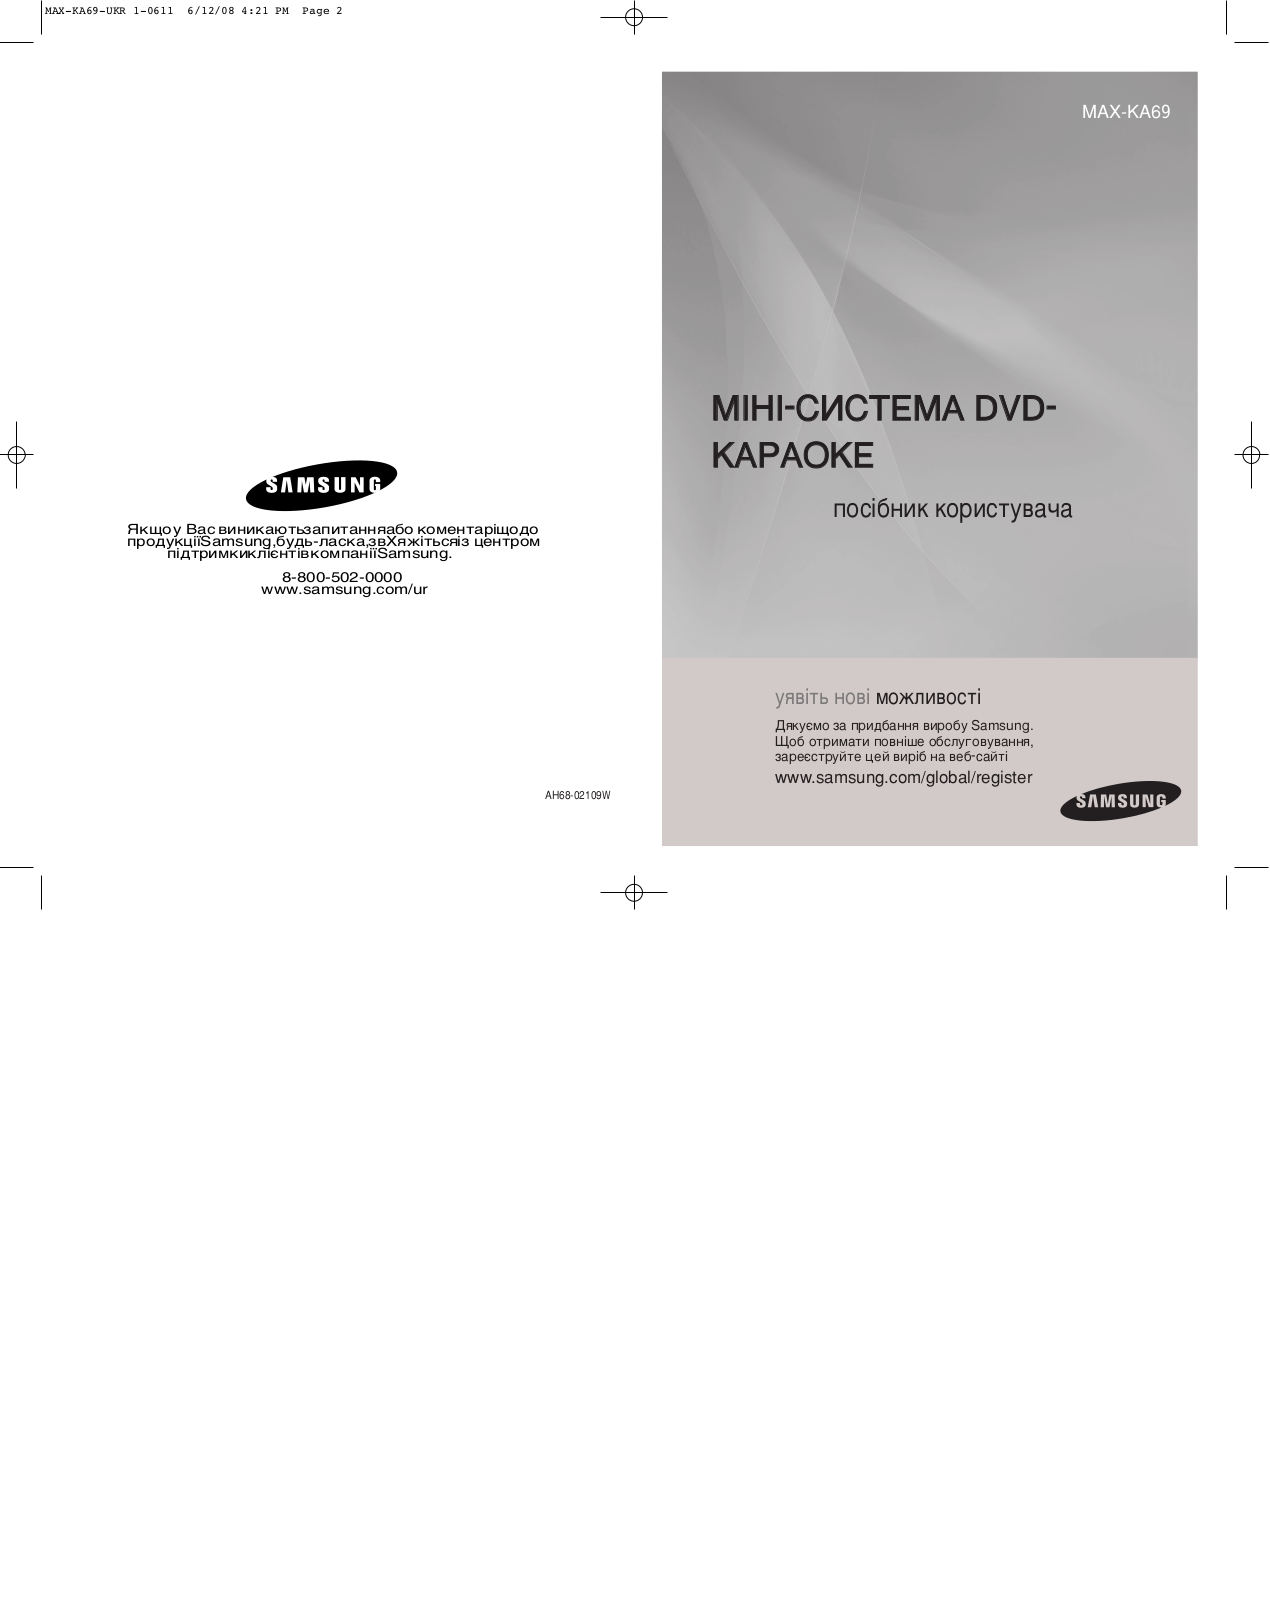 Samsung MAX-KA69Q, MAX-KA69 Manual